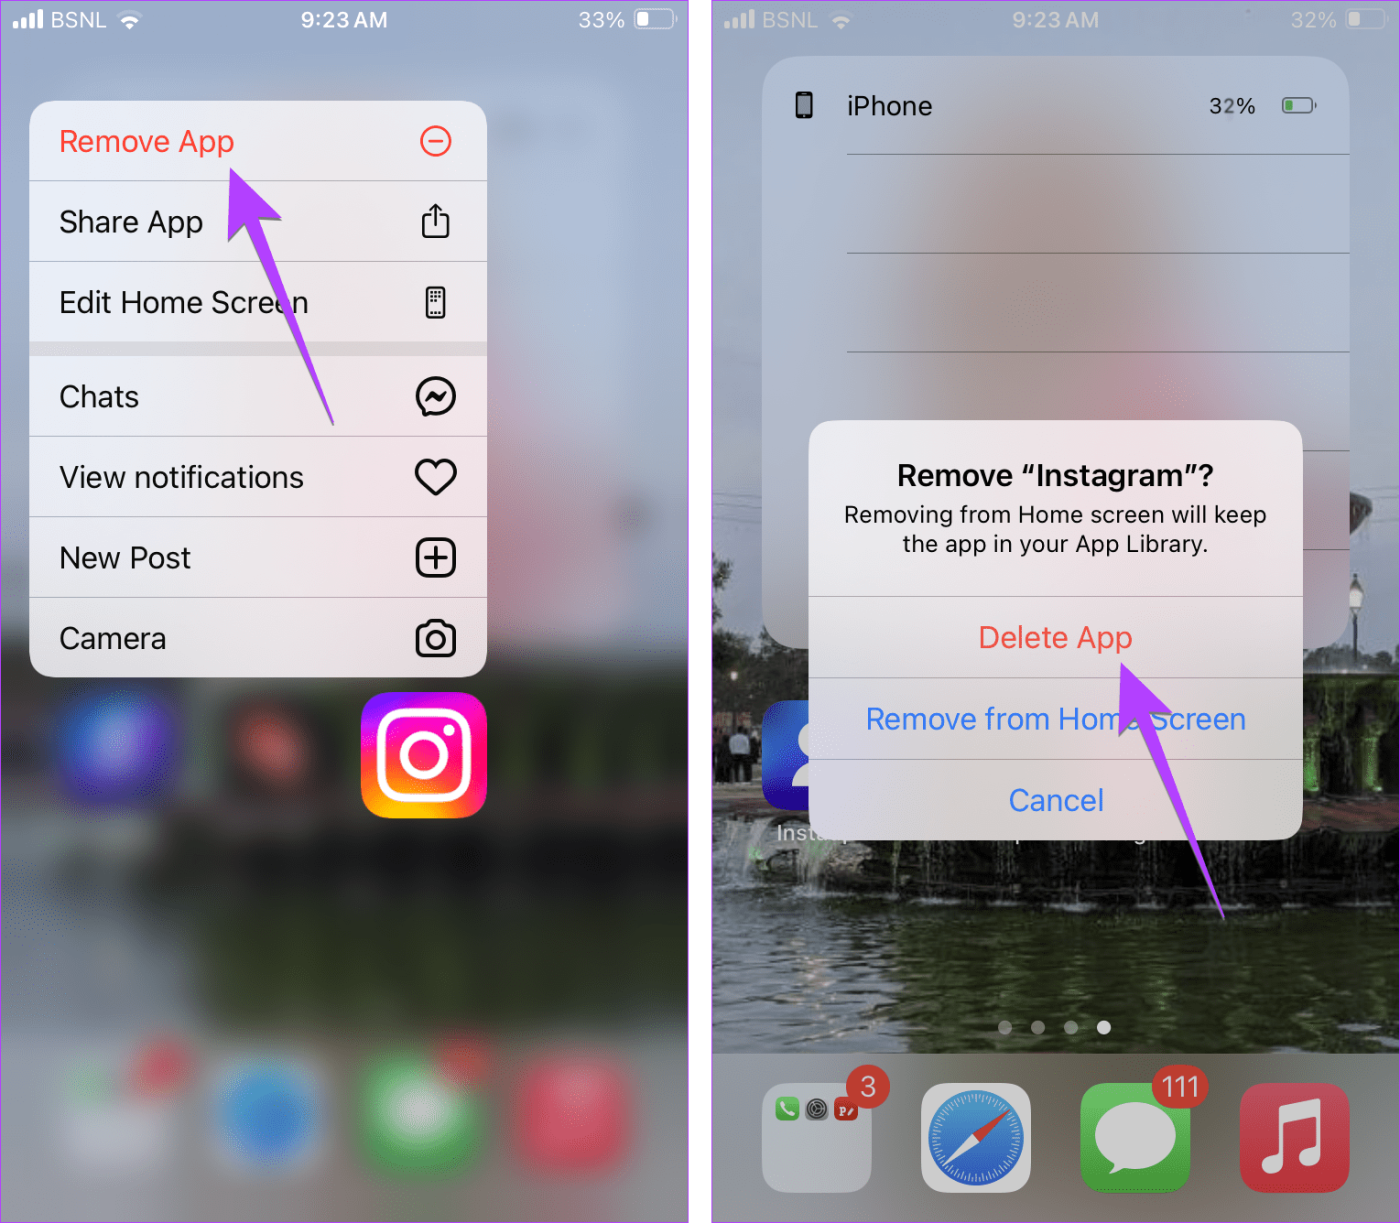 أفضل 5 طرق لإصلاح سمات دردشة Instagram التي لا تظهر أو تعمل على Android وiOS